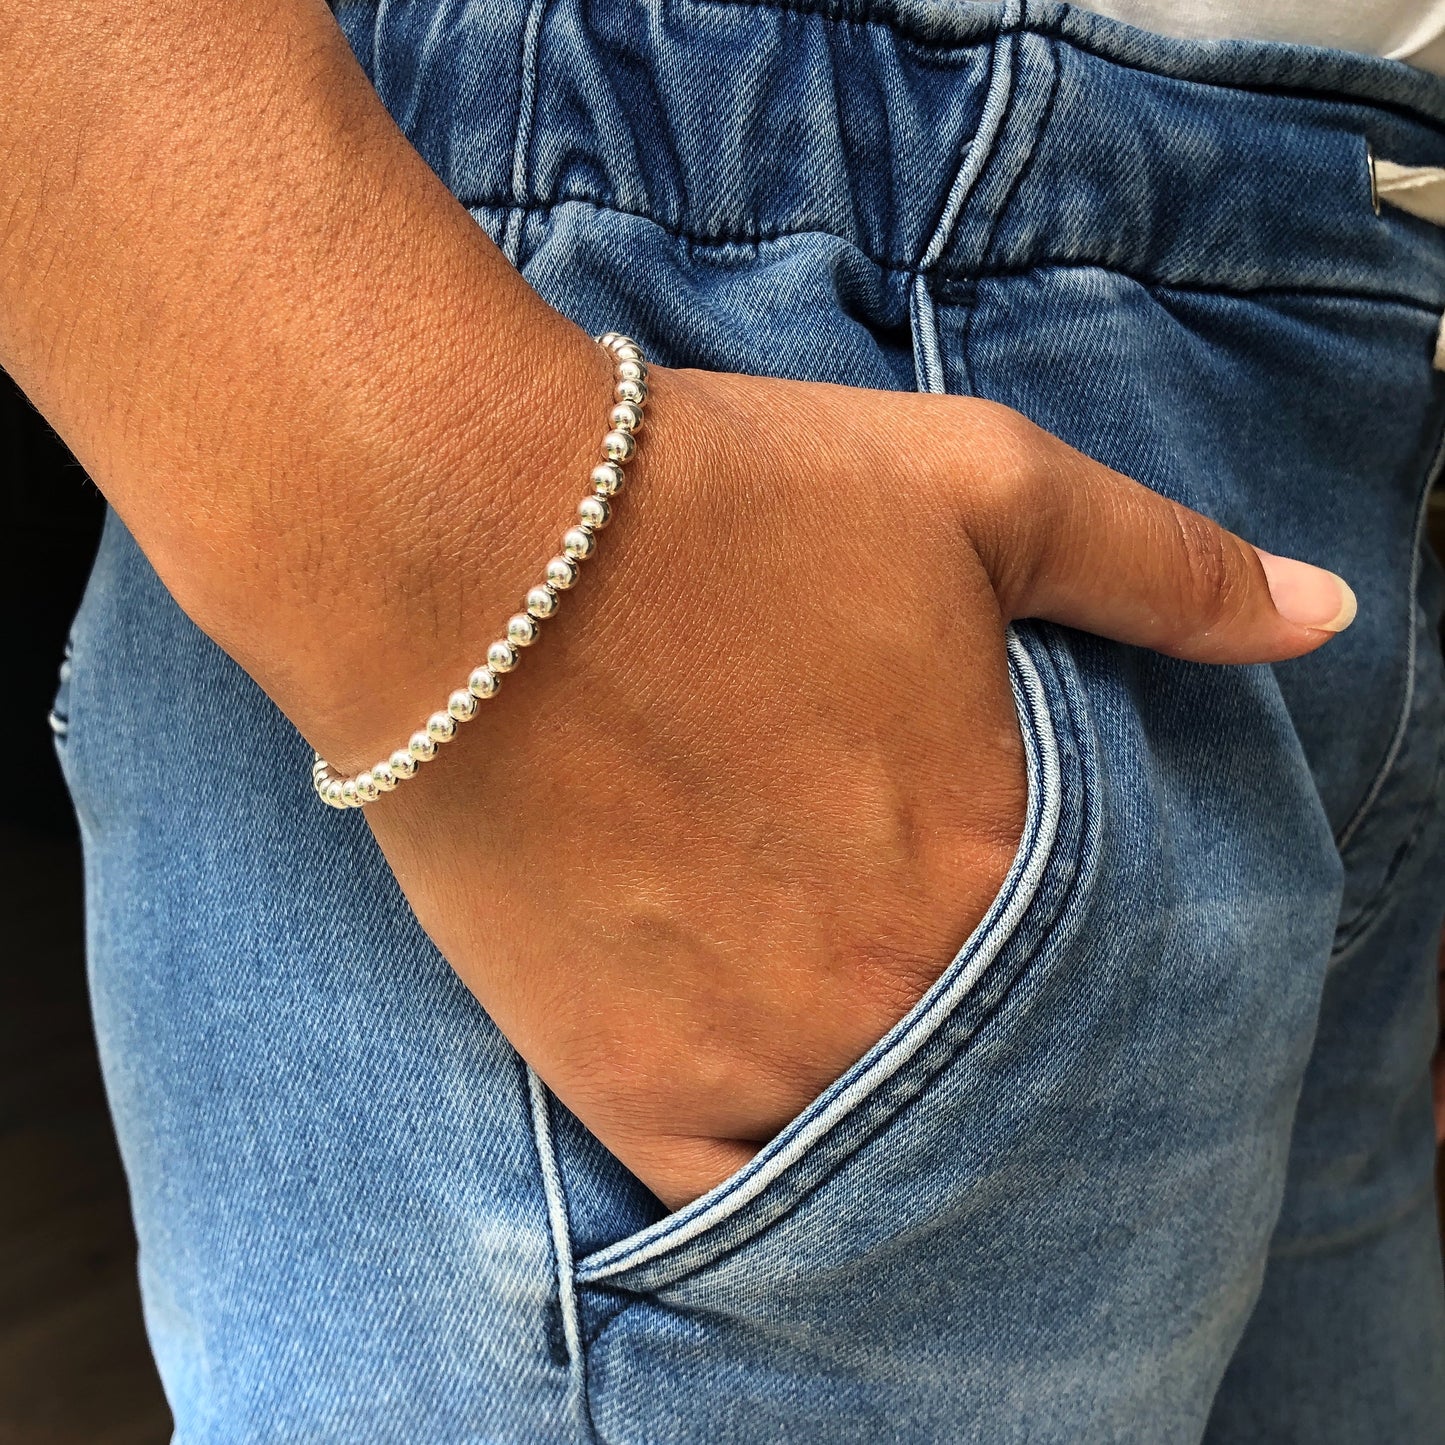 Sterling Silver Bead Bracelet